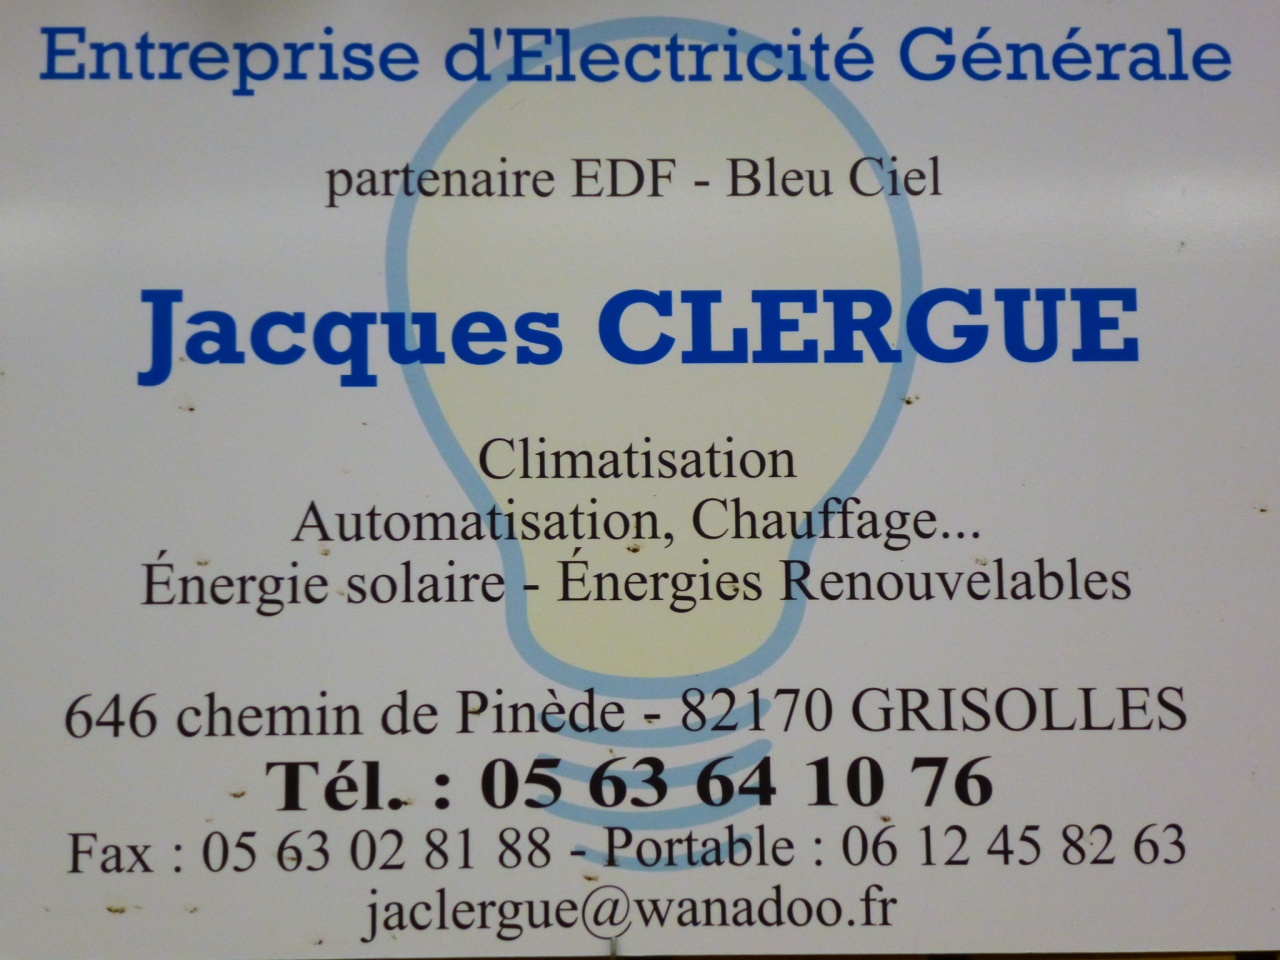 Jacques CLERGUE